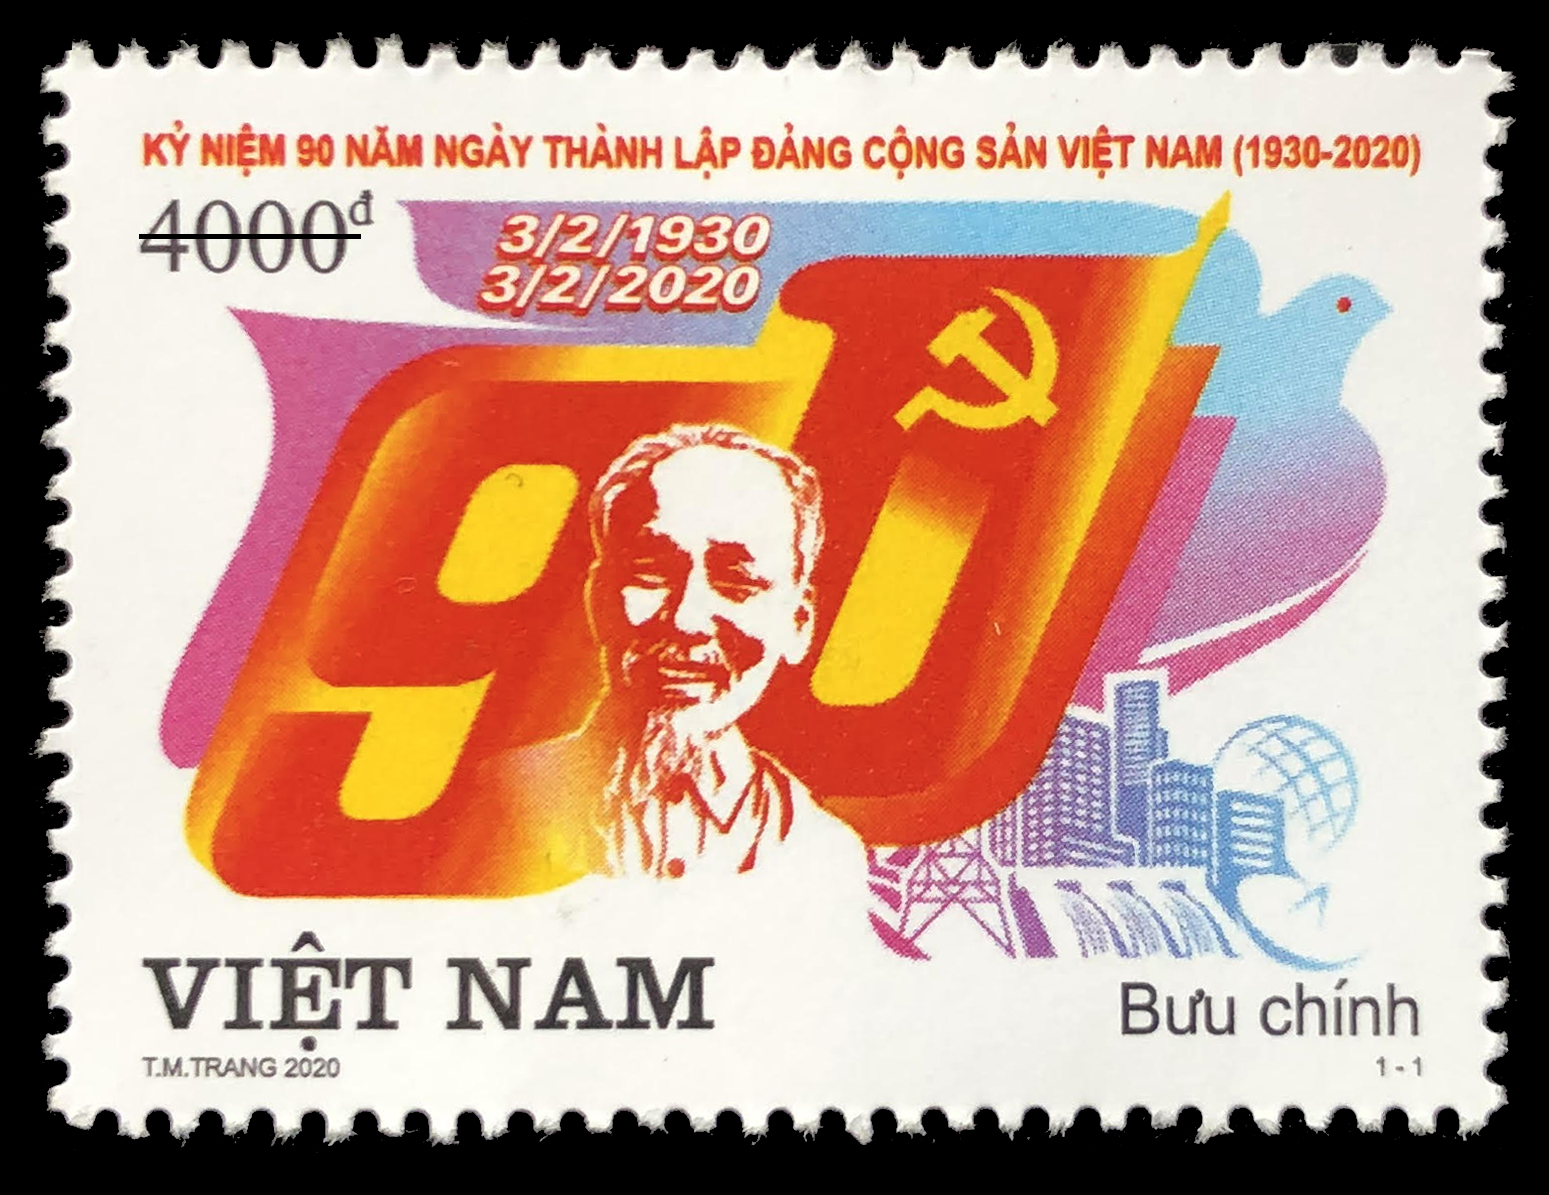 KN 90 năm thành lâp Đảng Cộng sản Việt Nam (3/2/1930-2020)